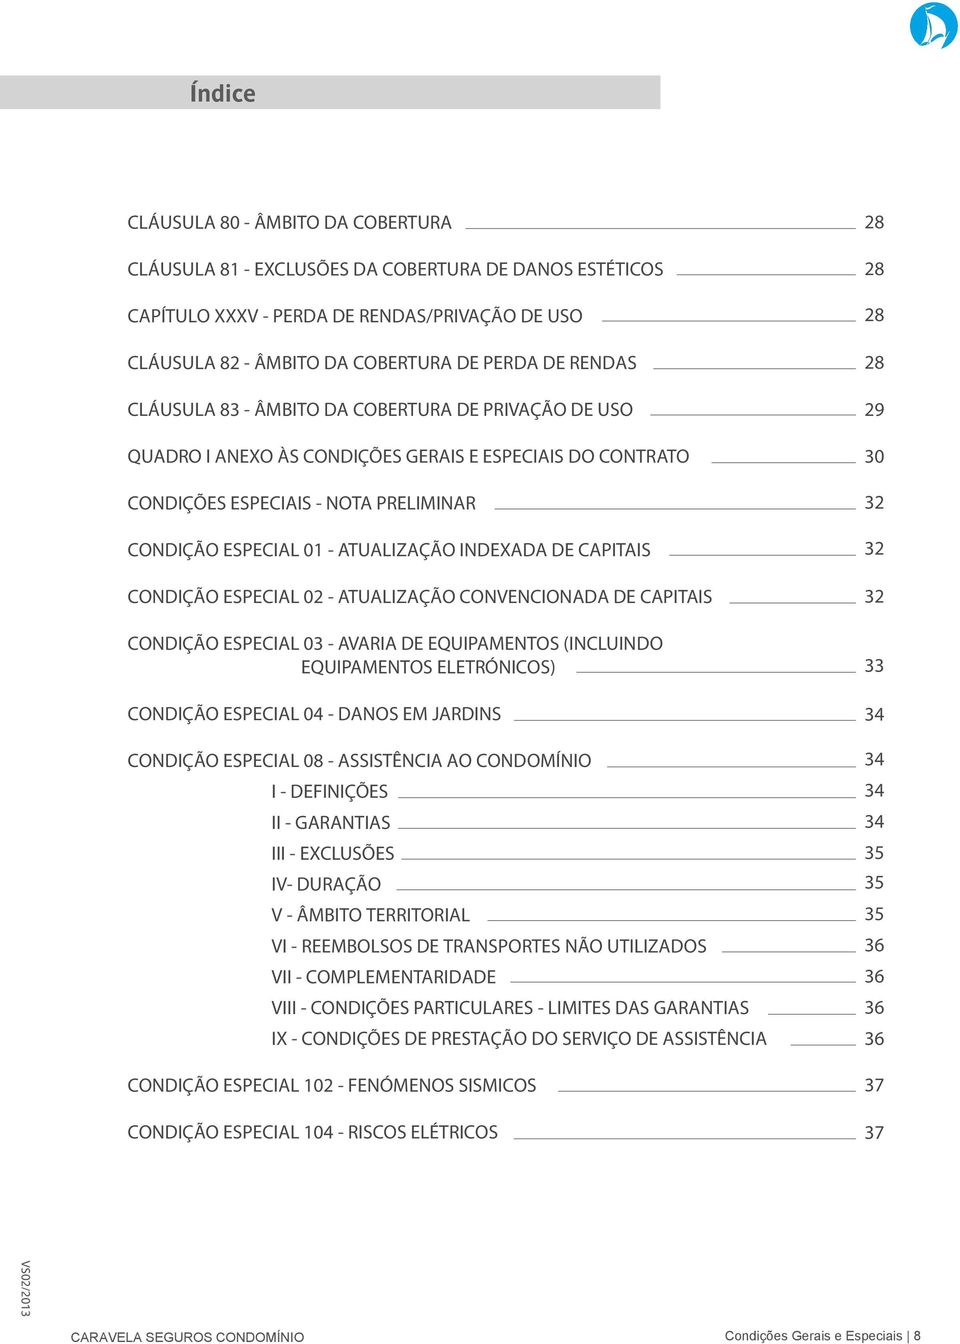 CAPITAIS CONDIÇÃO ESPECIAL 03 - AVARIA DE EQUIPAMENTOS (INCLUINDO EQUIPAMENTOS ELETRÓNICOS) CONDIÇÃO ESPECIAL 04 - DANOS EM JARDINS CONDIÇÃO ESPECIAL 08 - ASSISTÊNCIA AO CONDOMÍNIO I - DEFINIÇÕES II